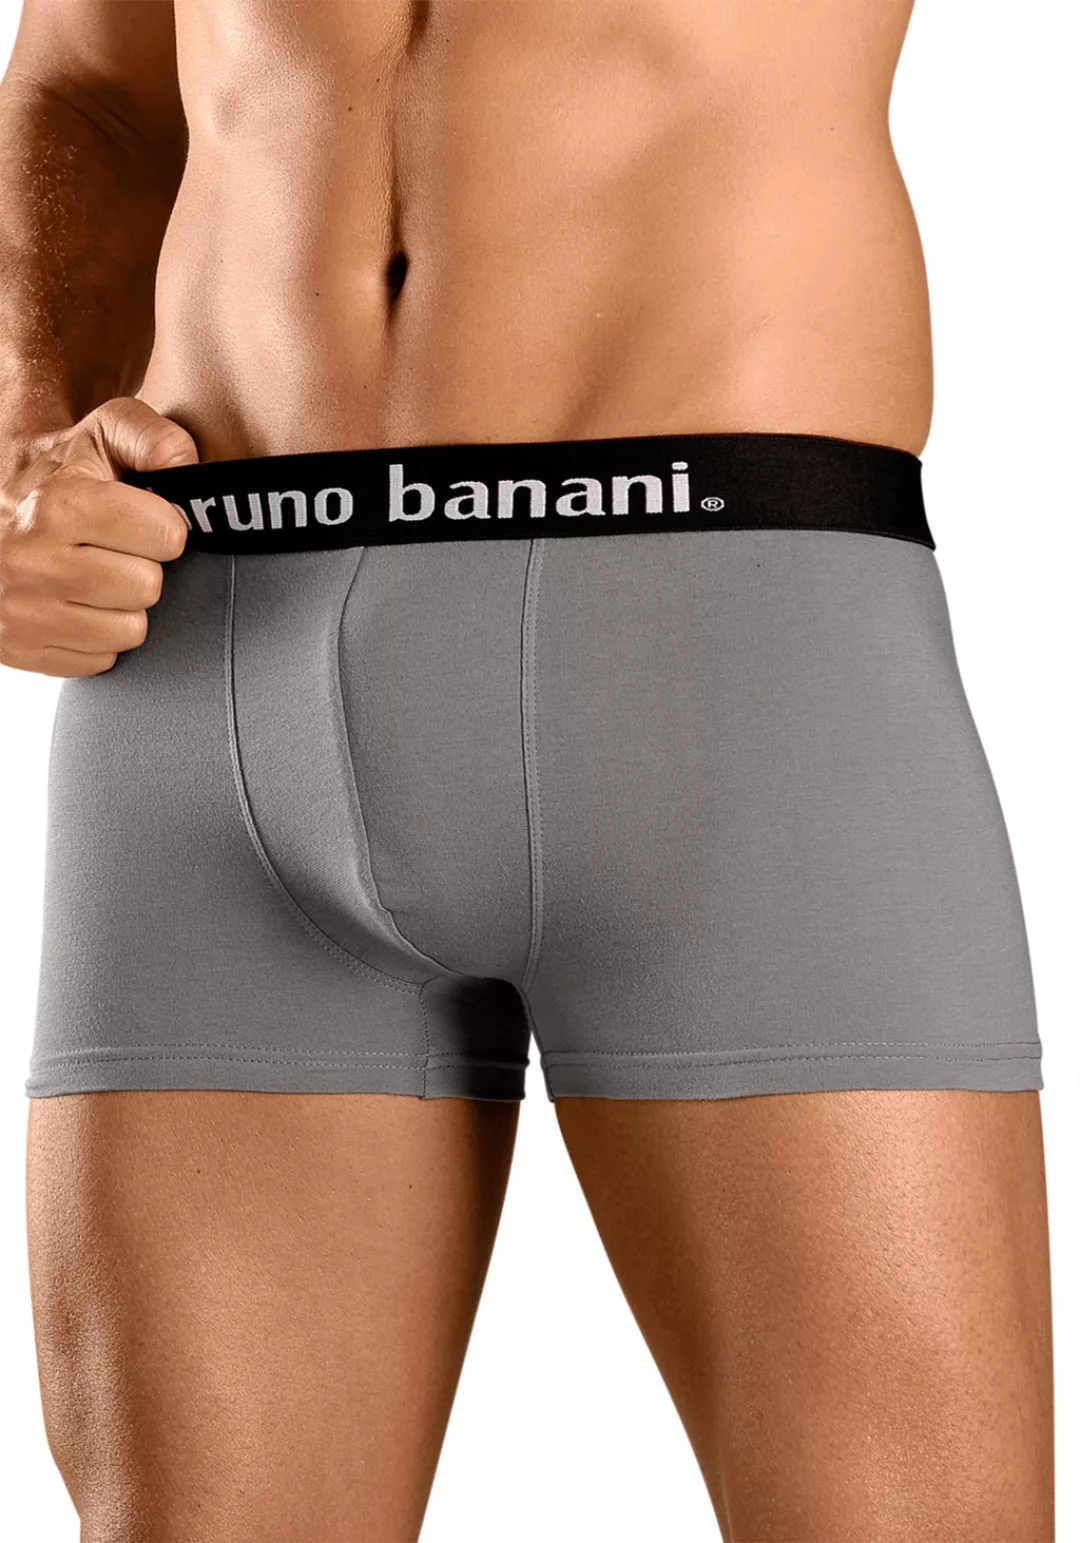 Bruno Banani Boxershorts, (Packung, 4 St.) günstig online kaufen